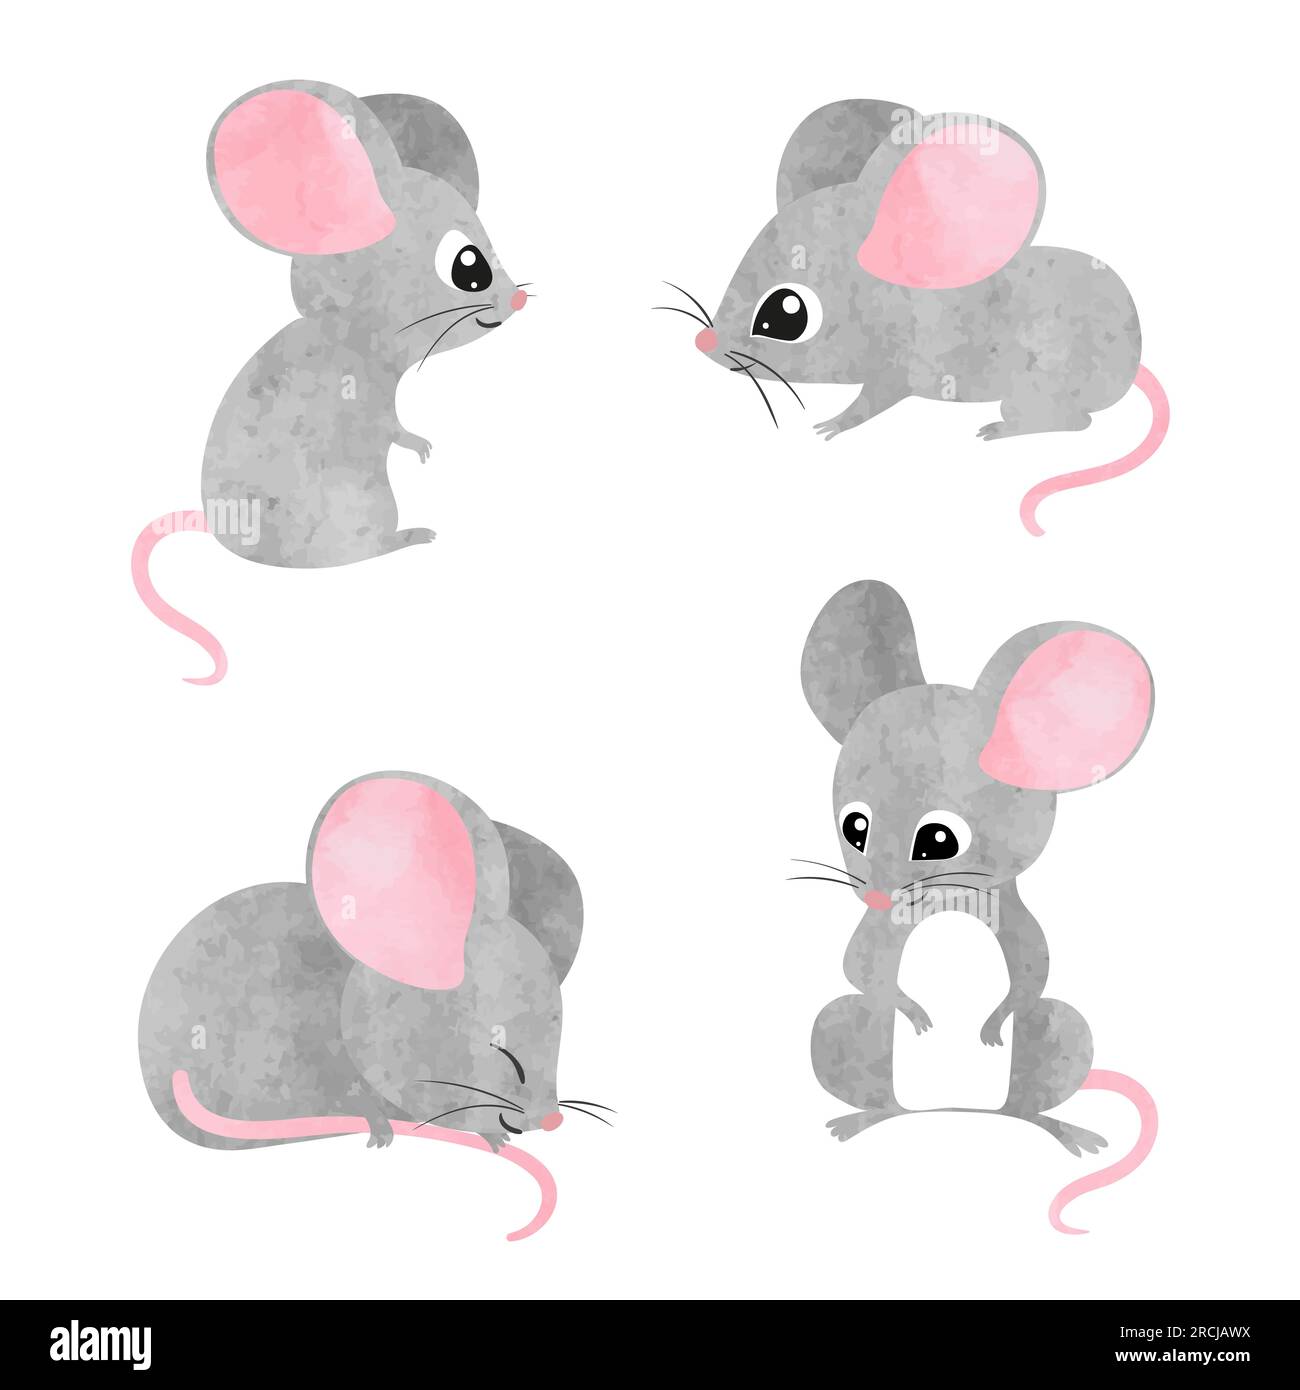 Ein Set süßer, kleiner Mäuse. Vektor-Aquarell-Maus-Sammlung Stock Vektor